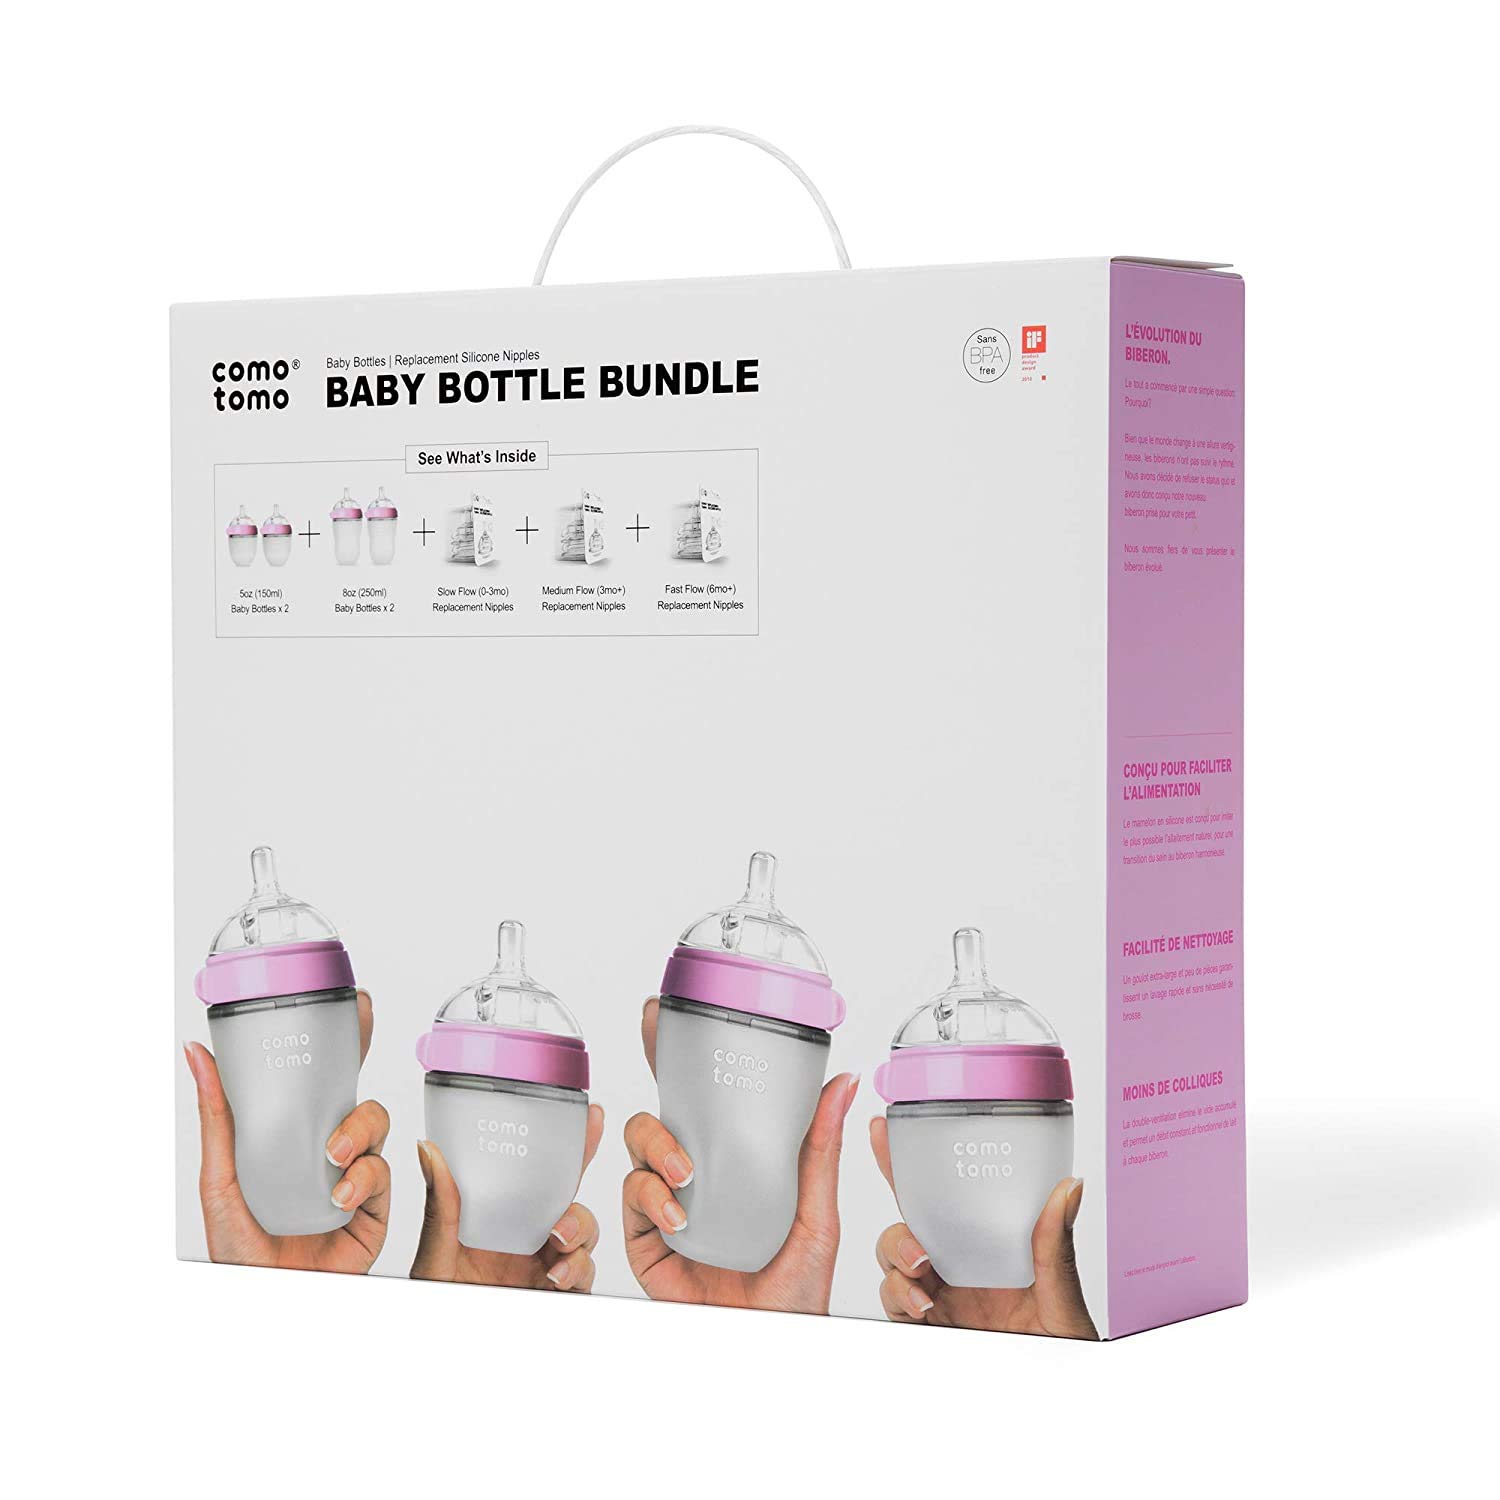 Comotomo Rg xr[{g 7s[XZbg [sN] Mr / Baby Bottle Bundle [Pink] 7 Piece Set